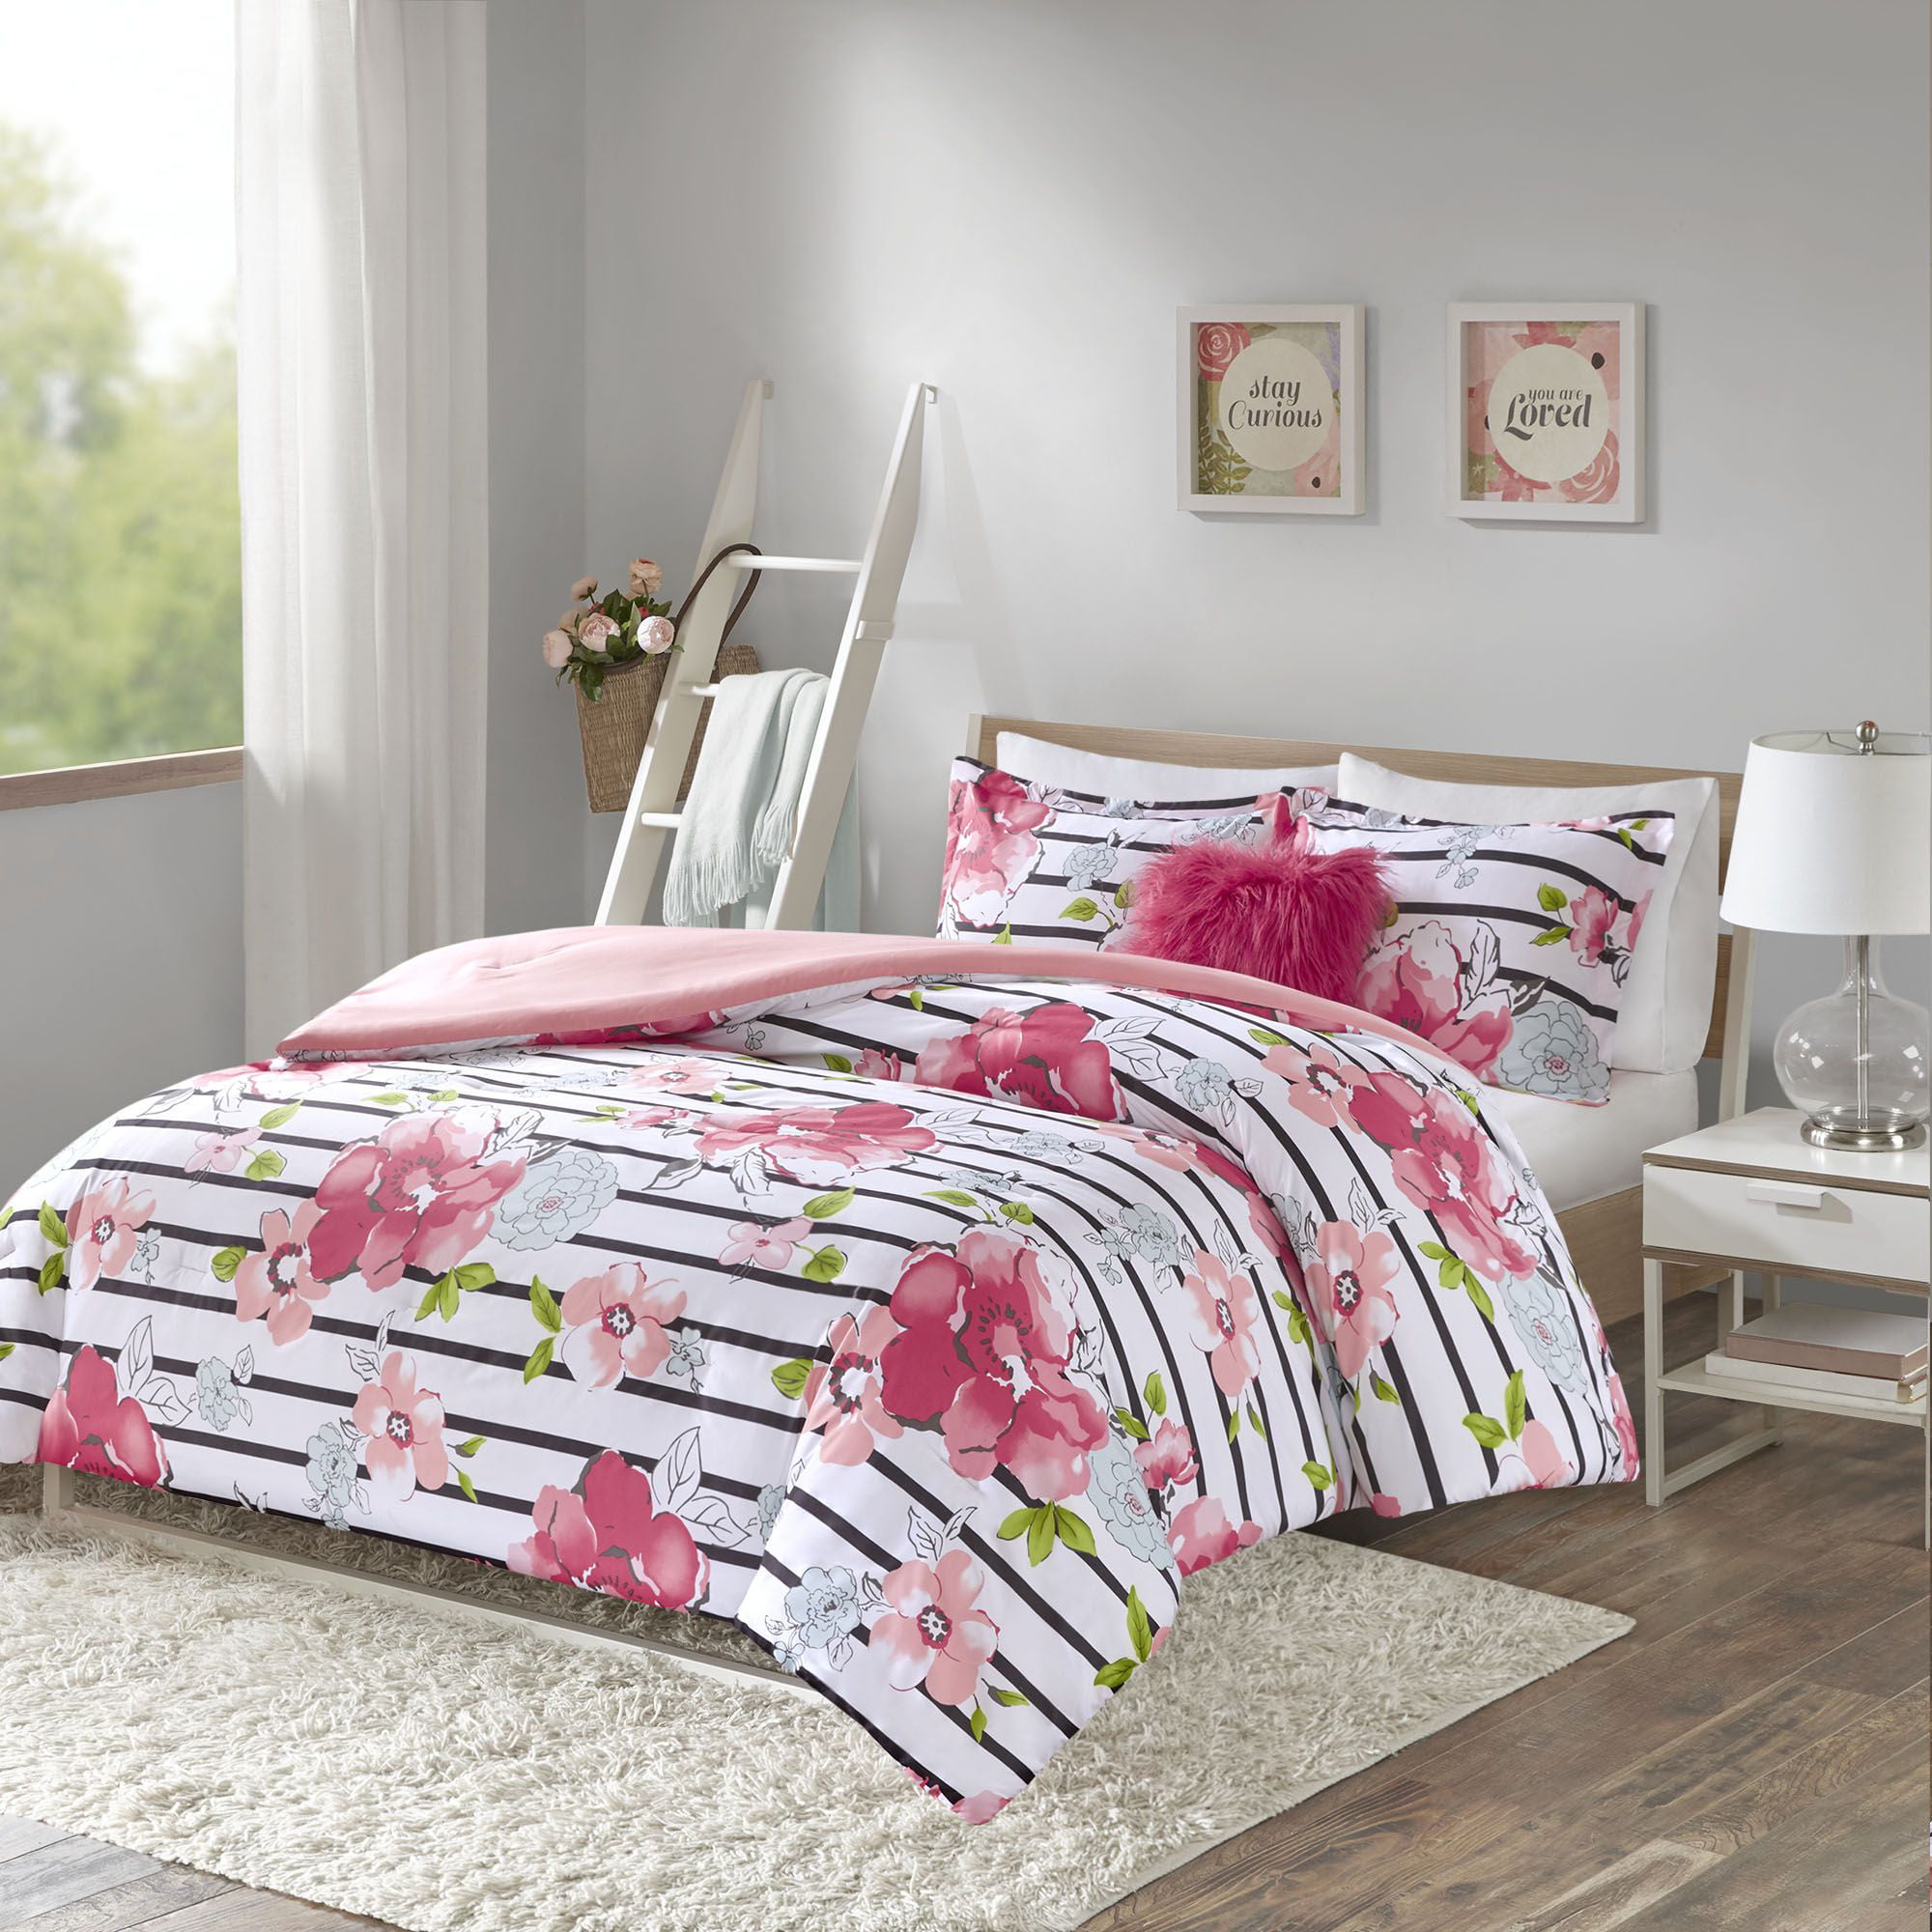 Comfort Spaces Zoe 4 Piece Comforter Set, Full/Queen, Pink - Walmart